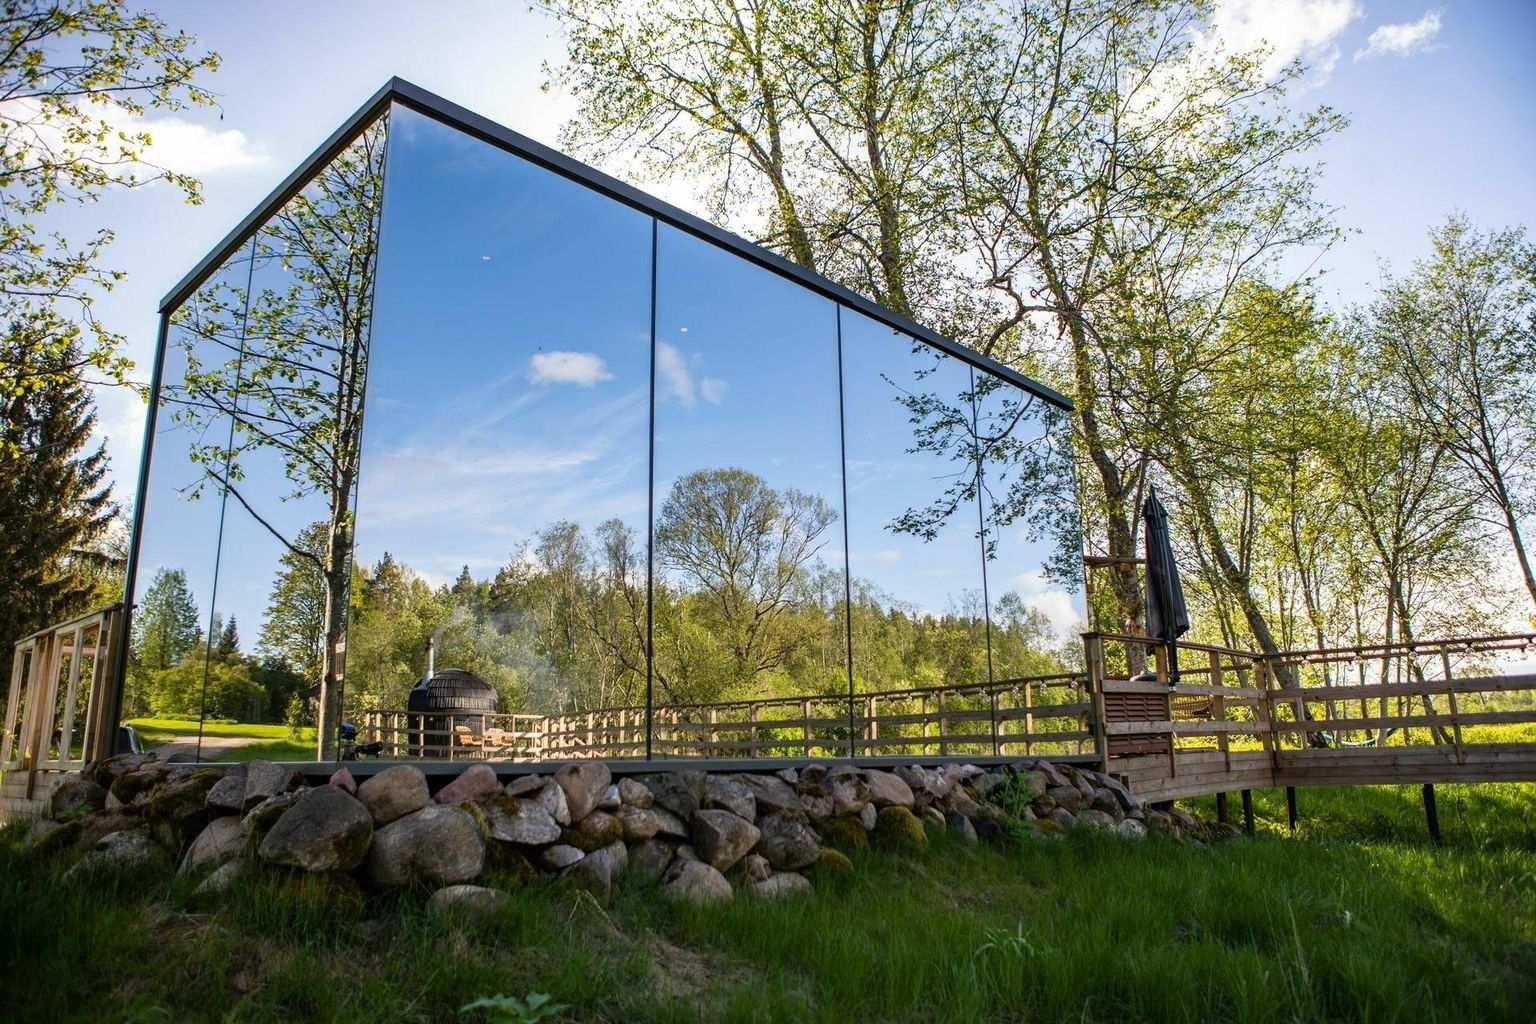 Riverbed Inni klaasseintega peegelmaja asub suuremas osas riigimaal, vaid hoonet ümbritsev terrass ulatub osaliselt osaühingule Ilusäde kuuluvale Veski kinnistule.